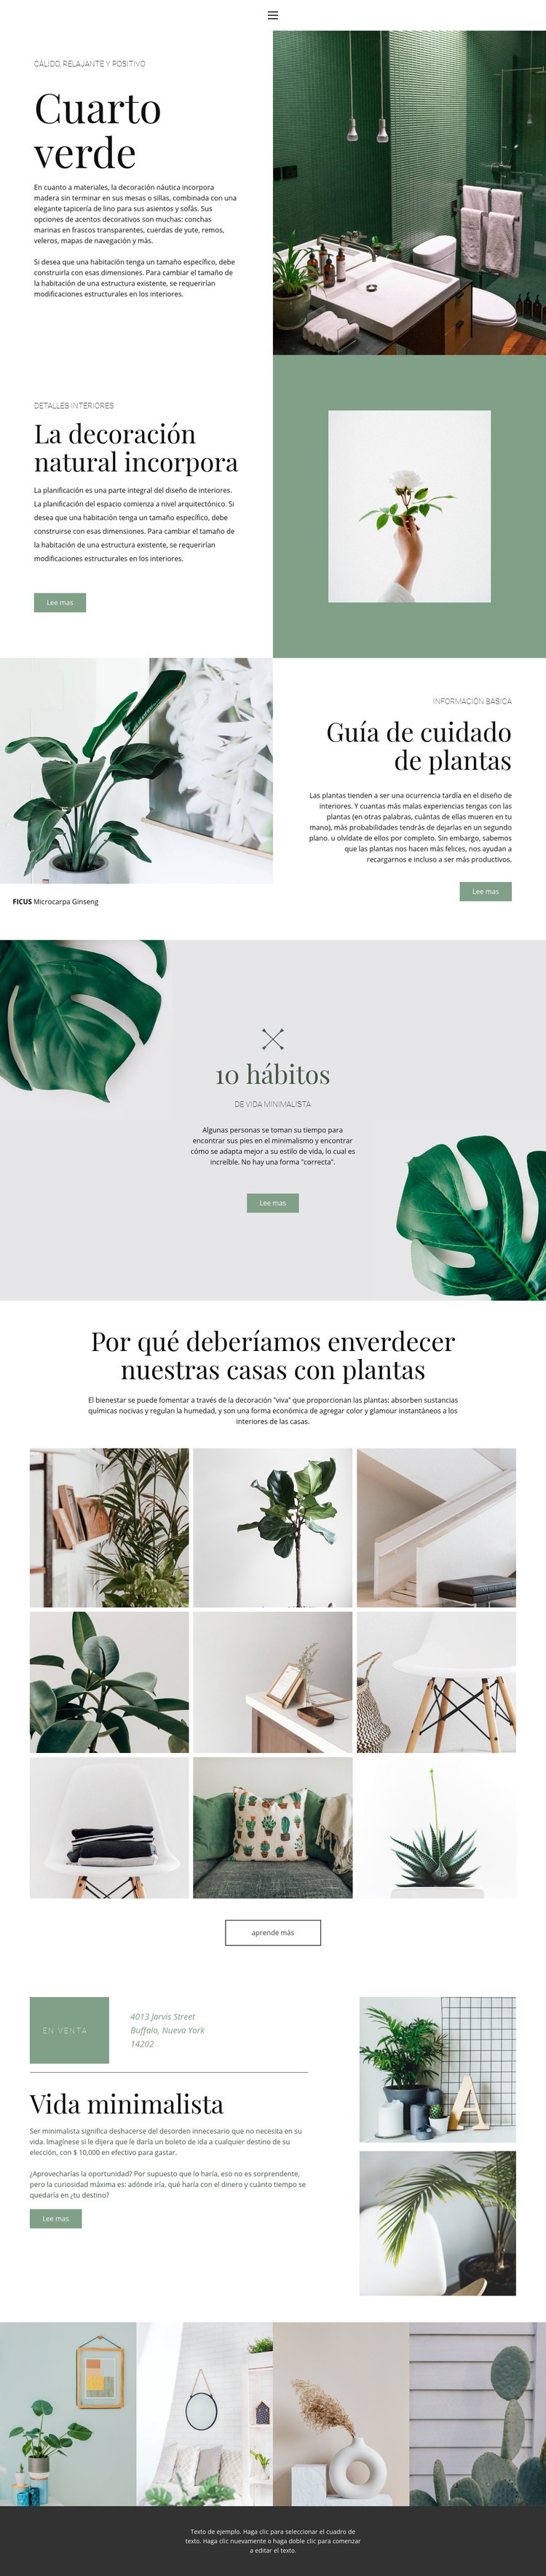 Detalles verdes en casa Diseño de páginas web